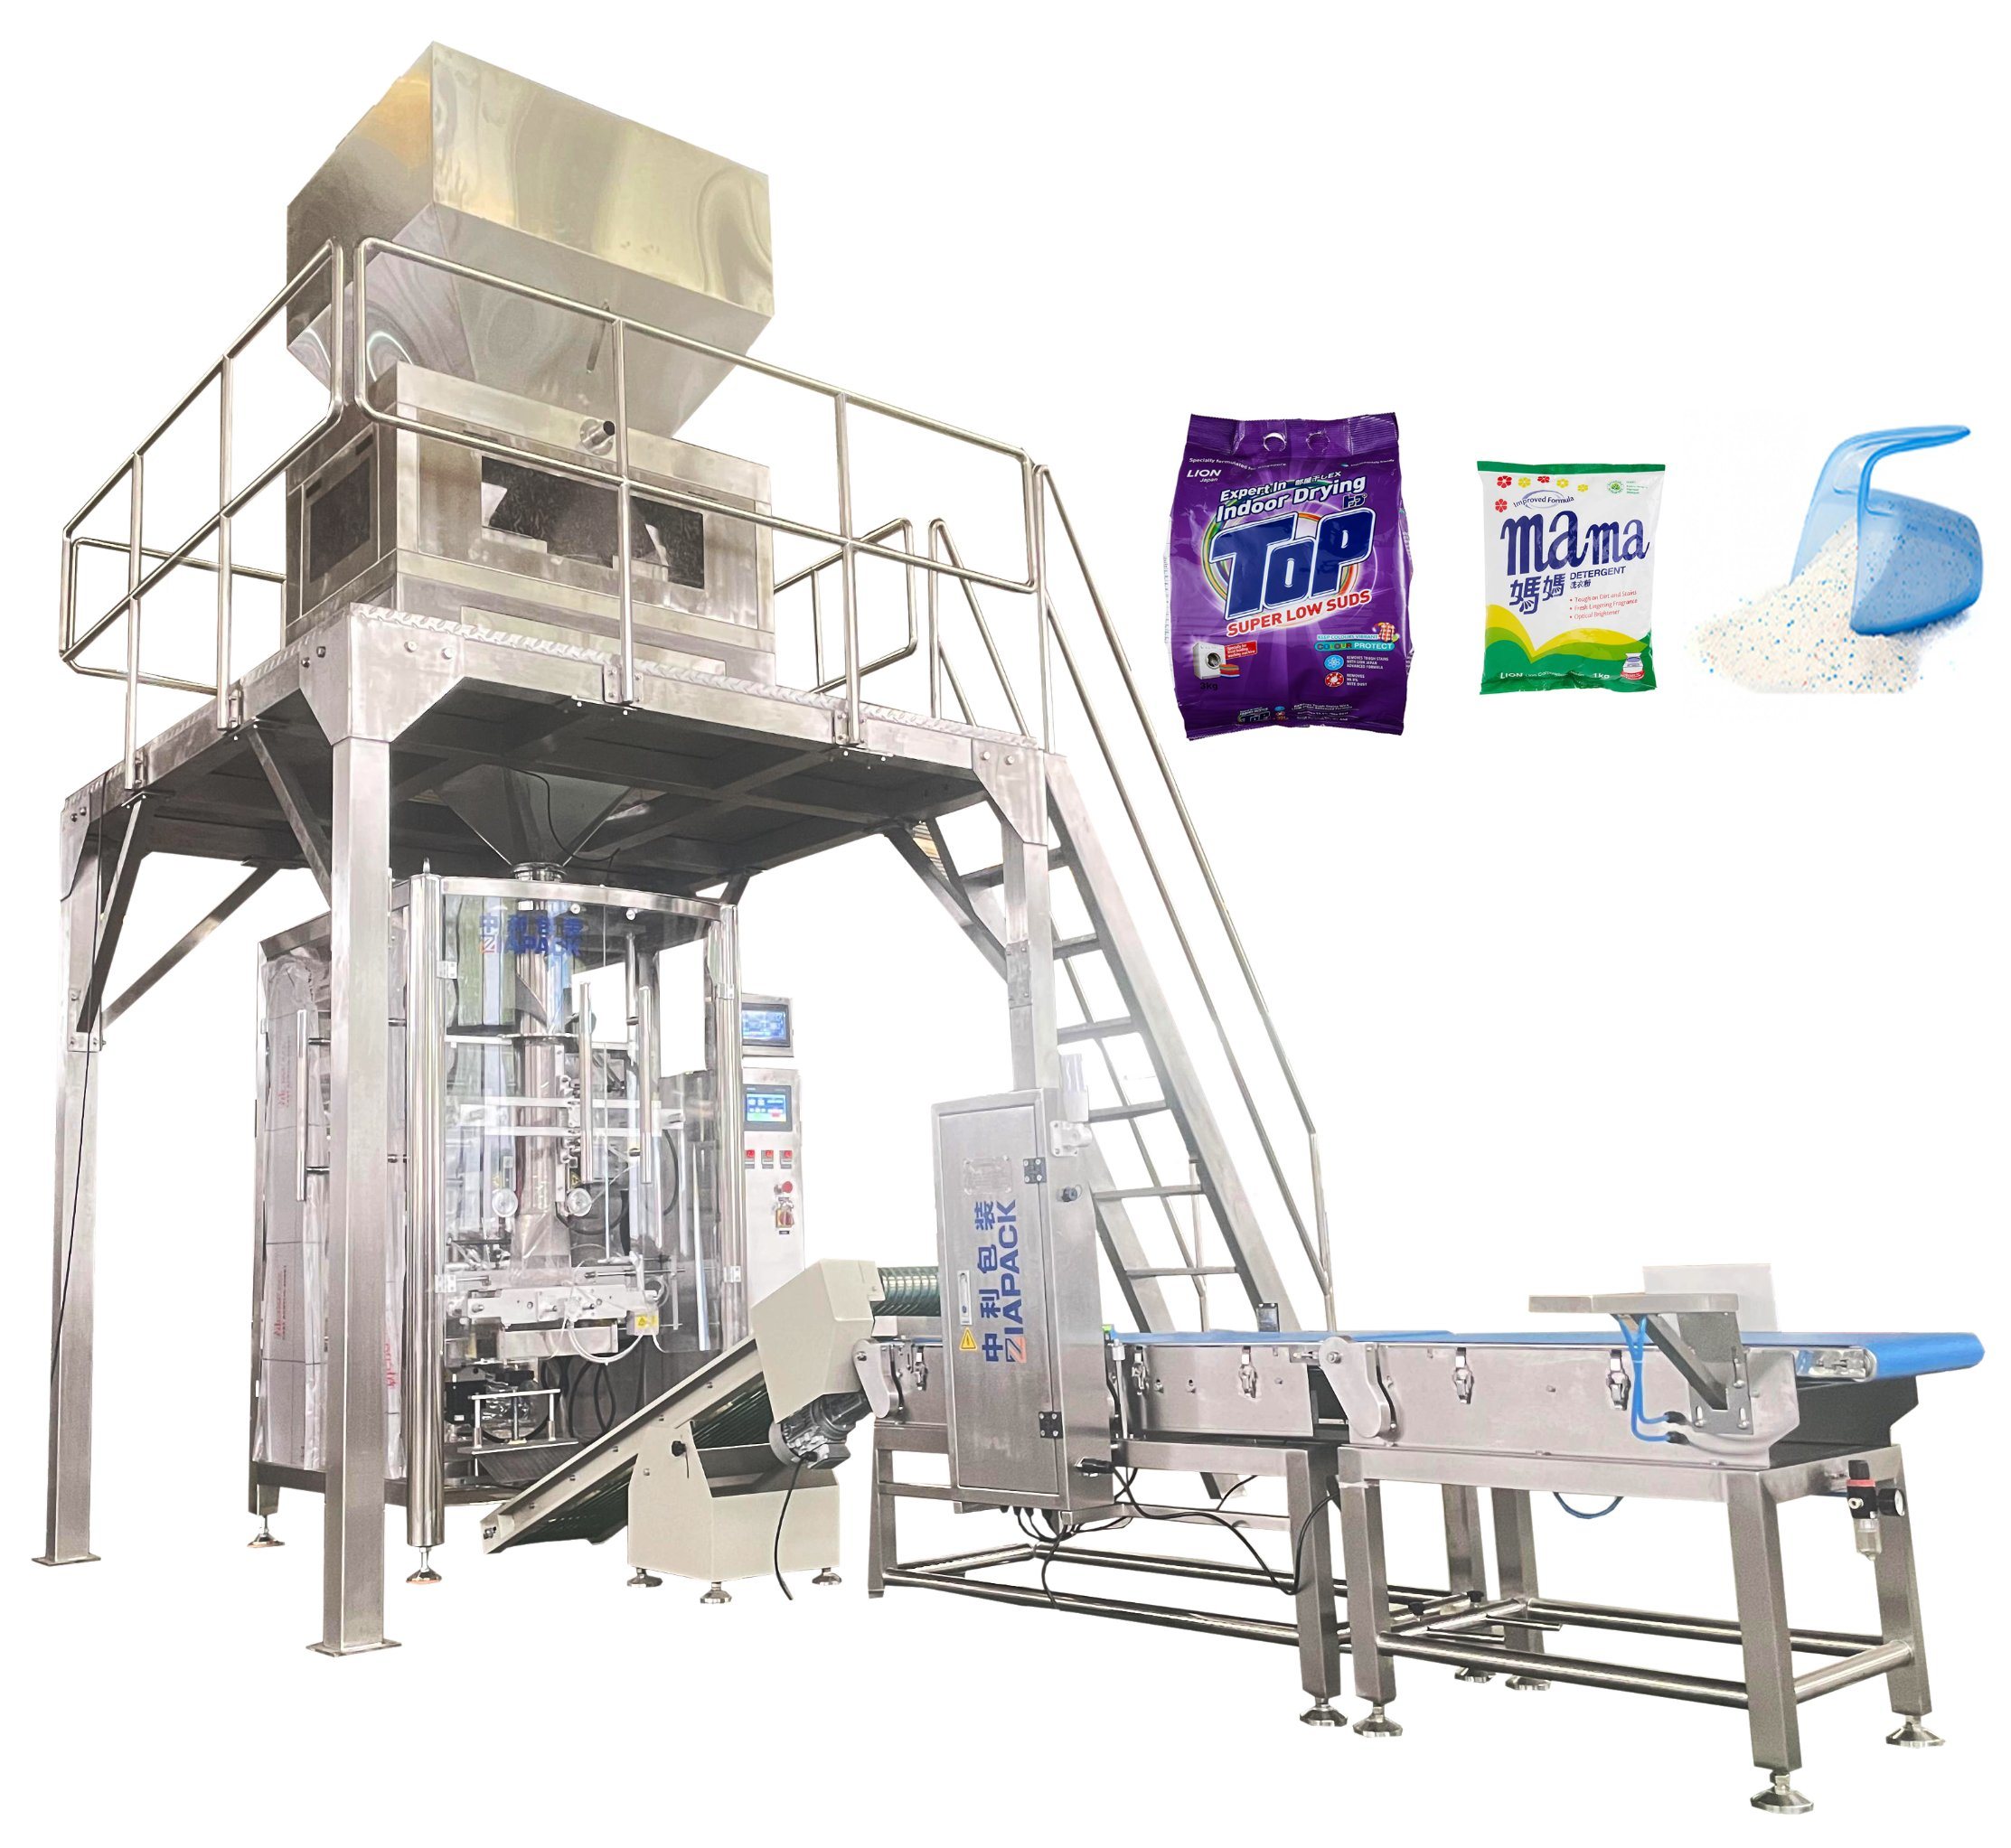 Machine d'emballage automatique verticale multifonction Vffs (emballage) pour la lessive en poudre